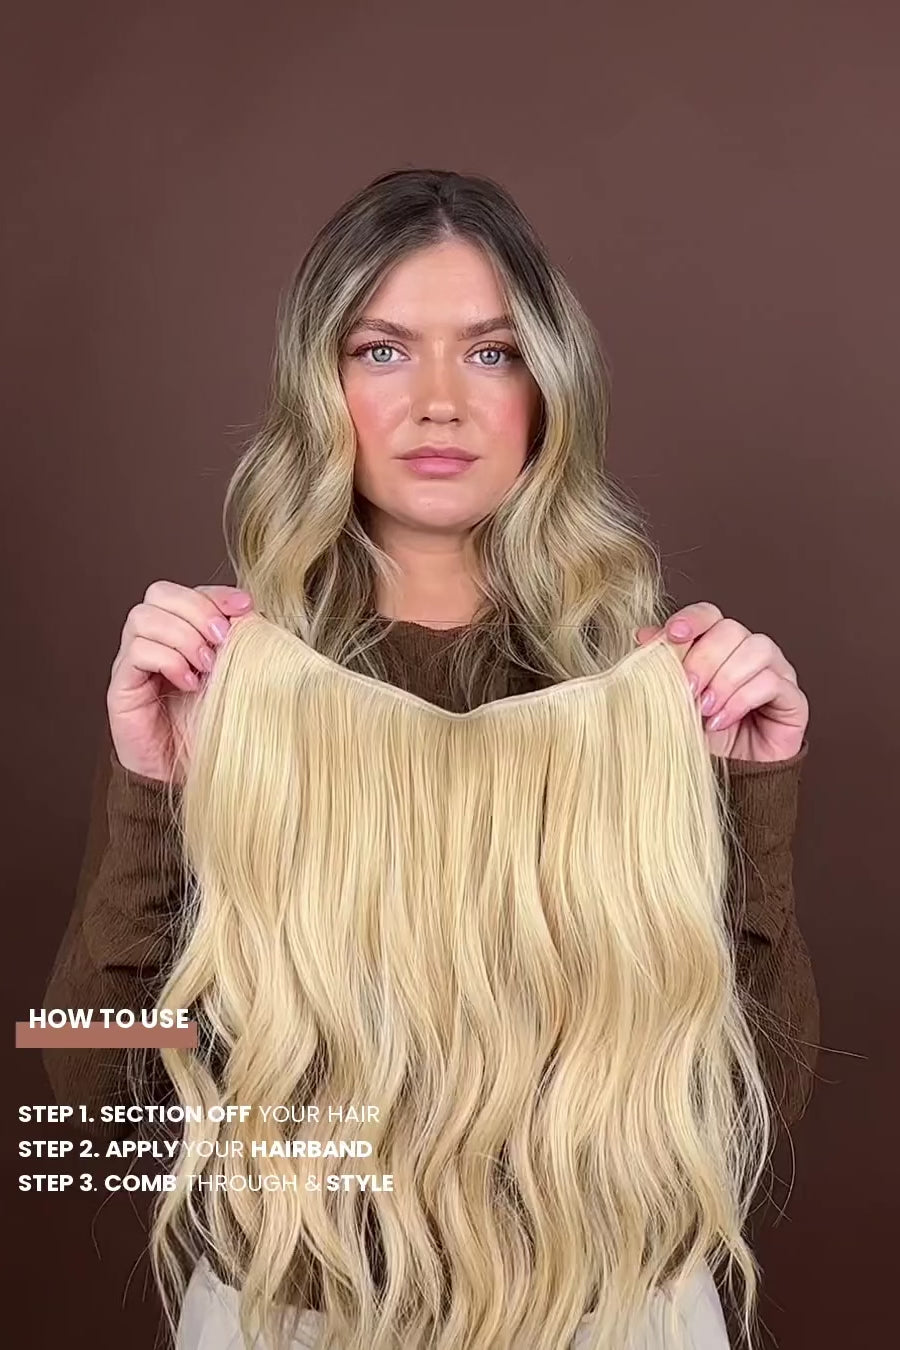 Produkt video som visar hur man sätter på sig BHBD halo hårband